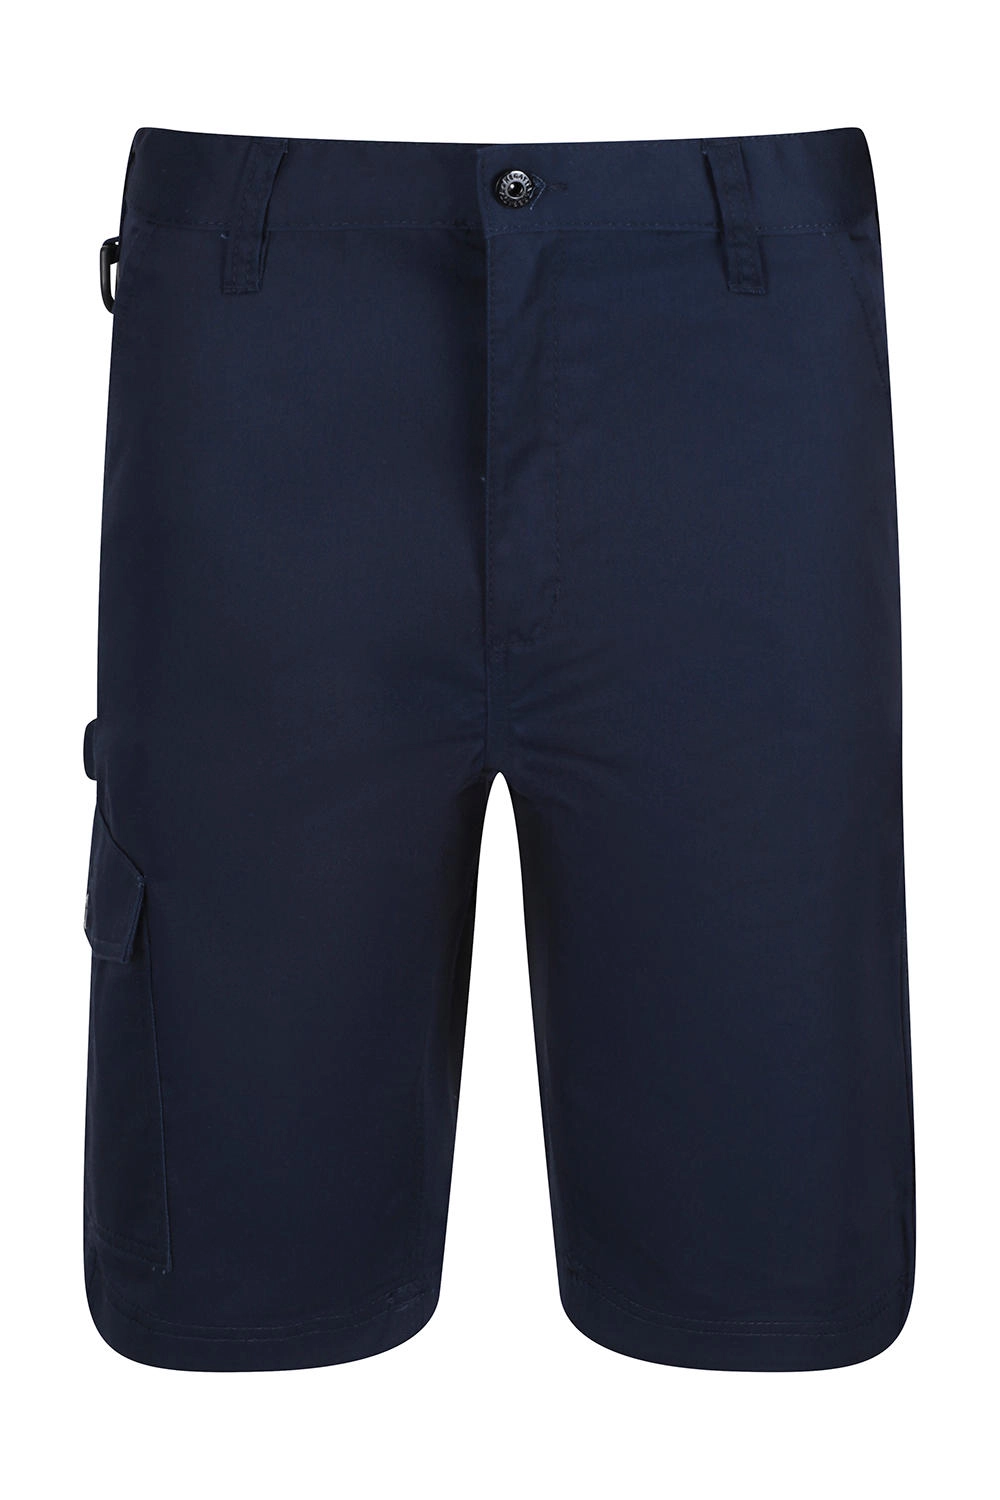 Pro Cargo Shorts zum Besticken und Bedrucken in der Farbe Navy mit Ihren Logo, Schriftzug oder Motiv.